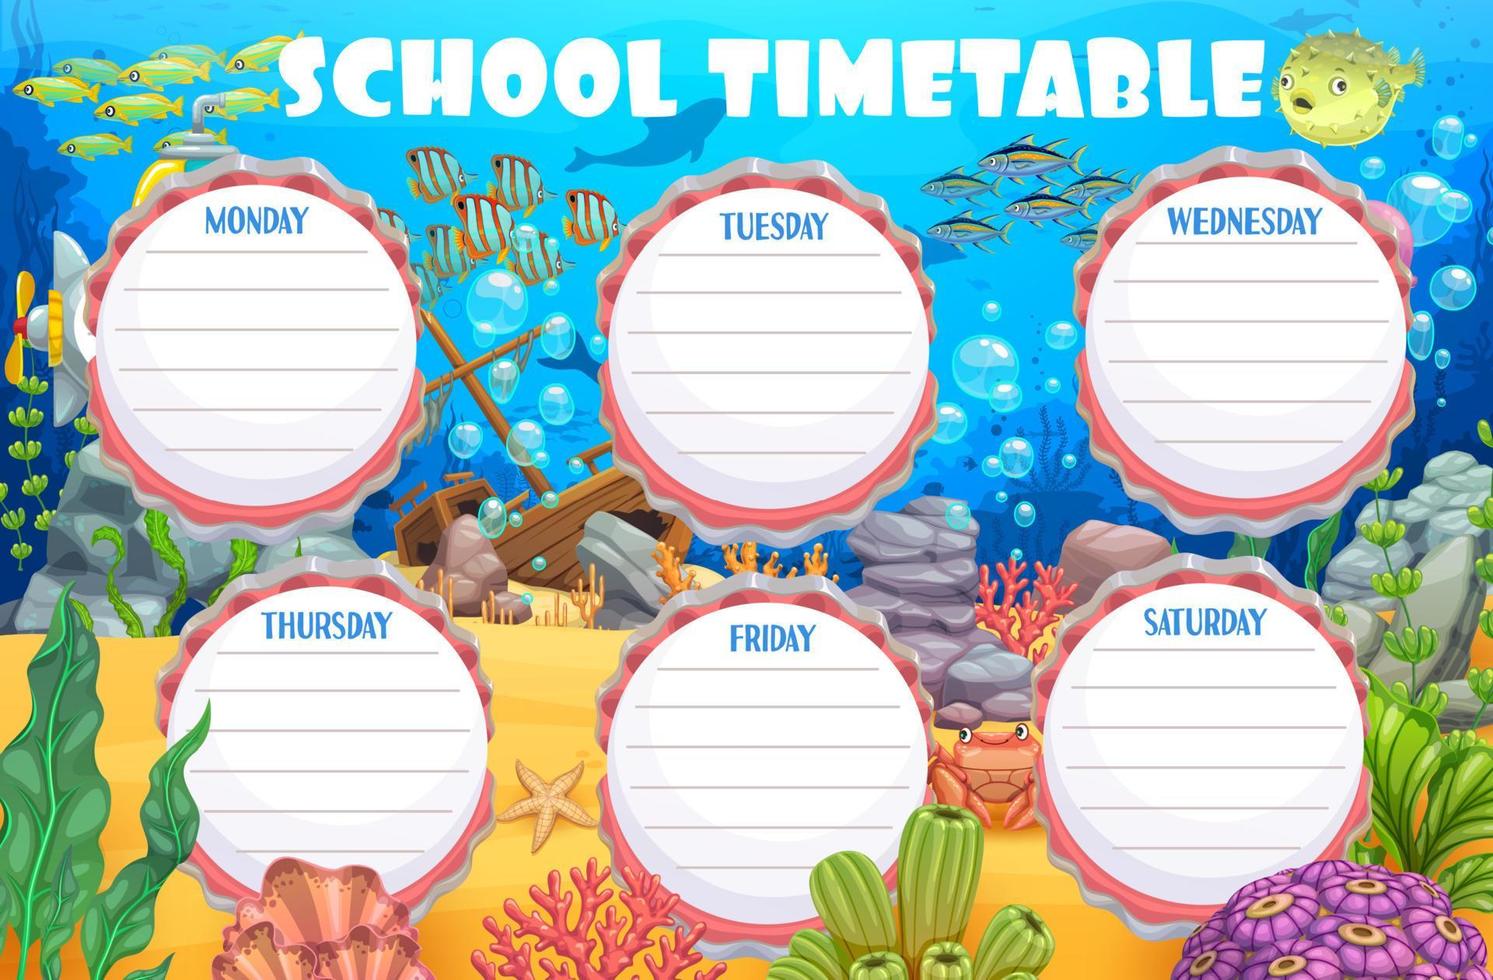 Timetable schedule, underwater landscape, animals vector